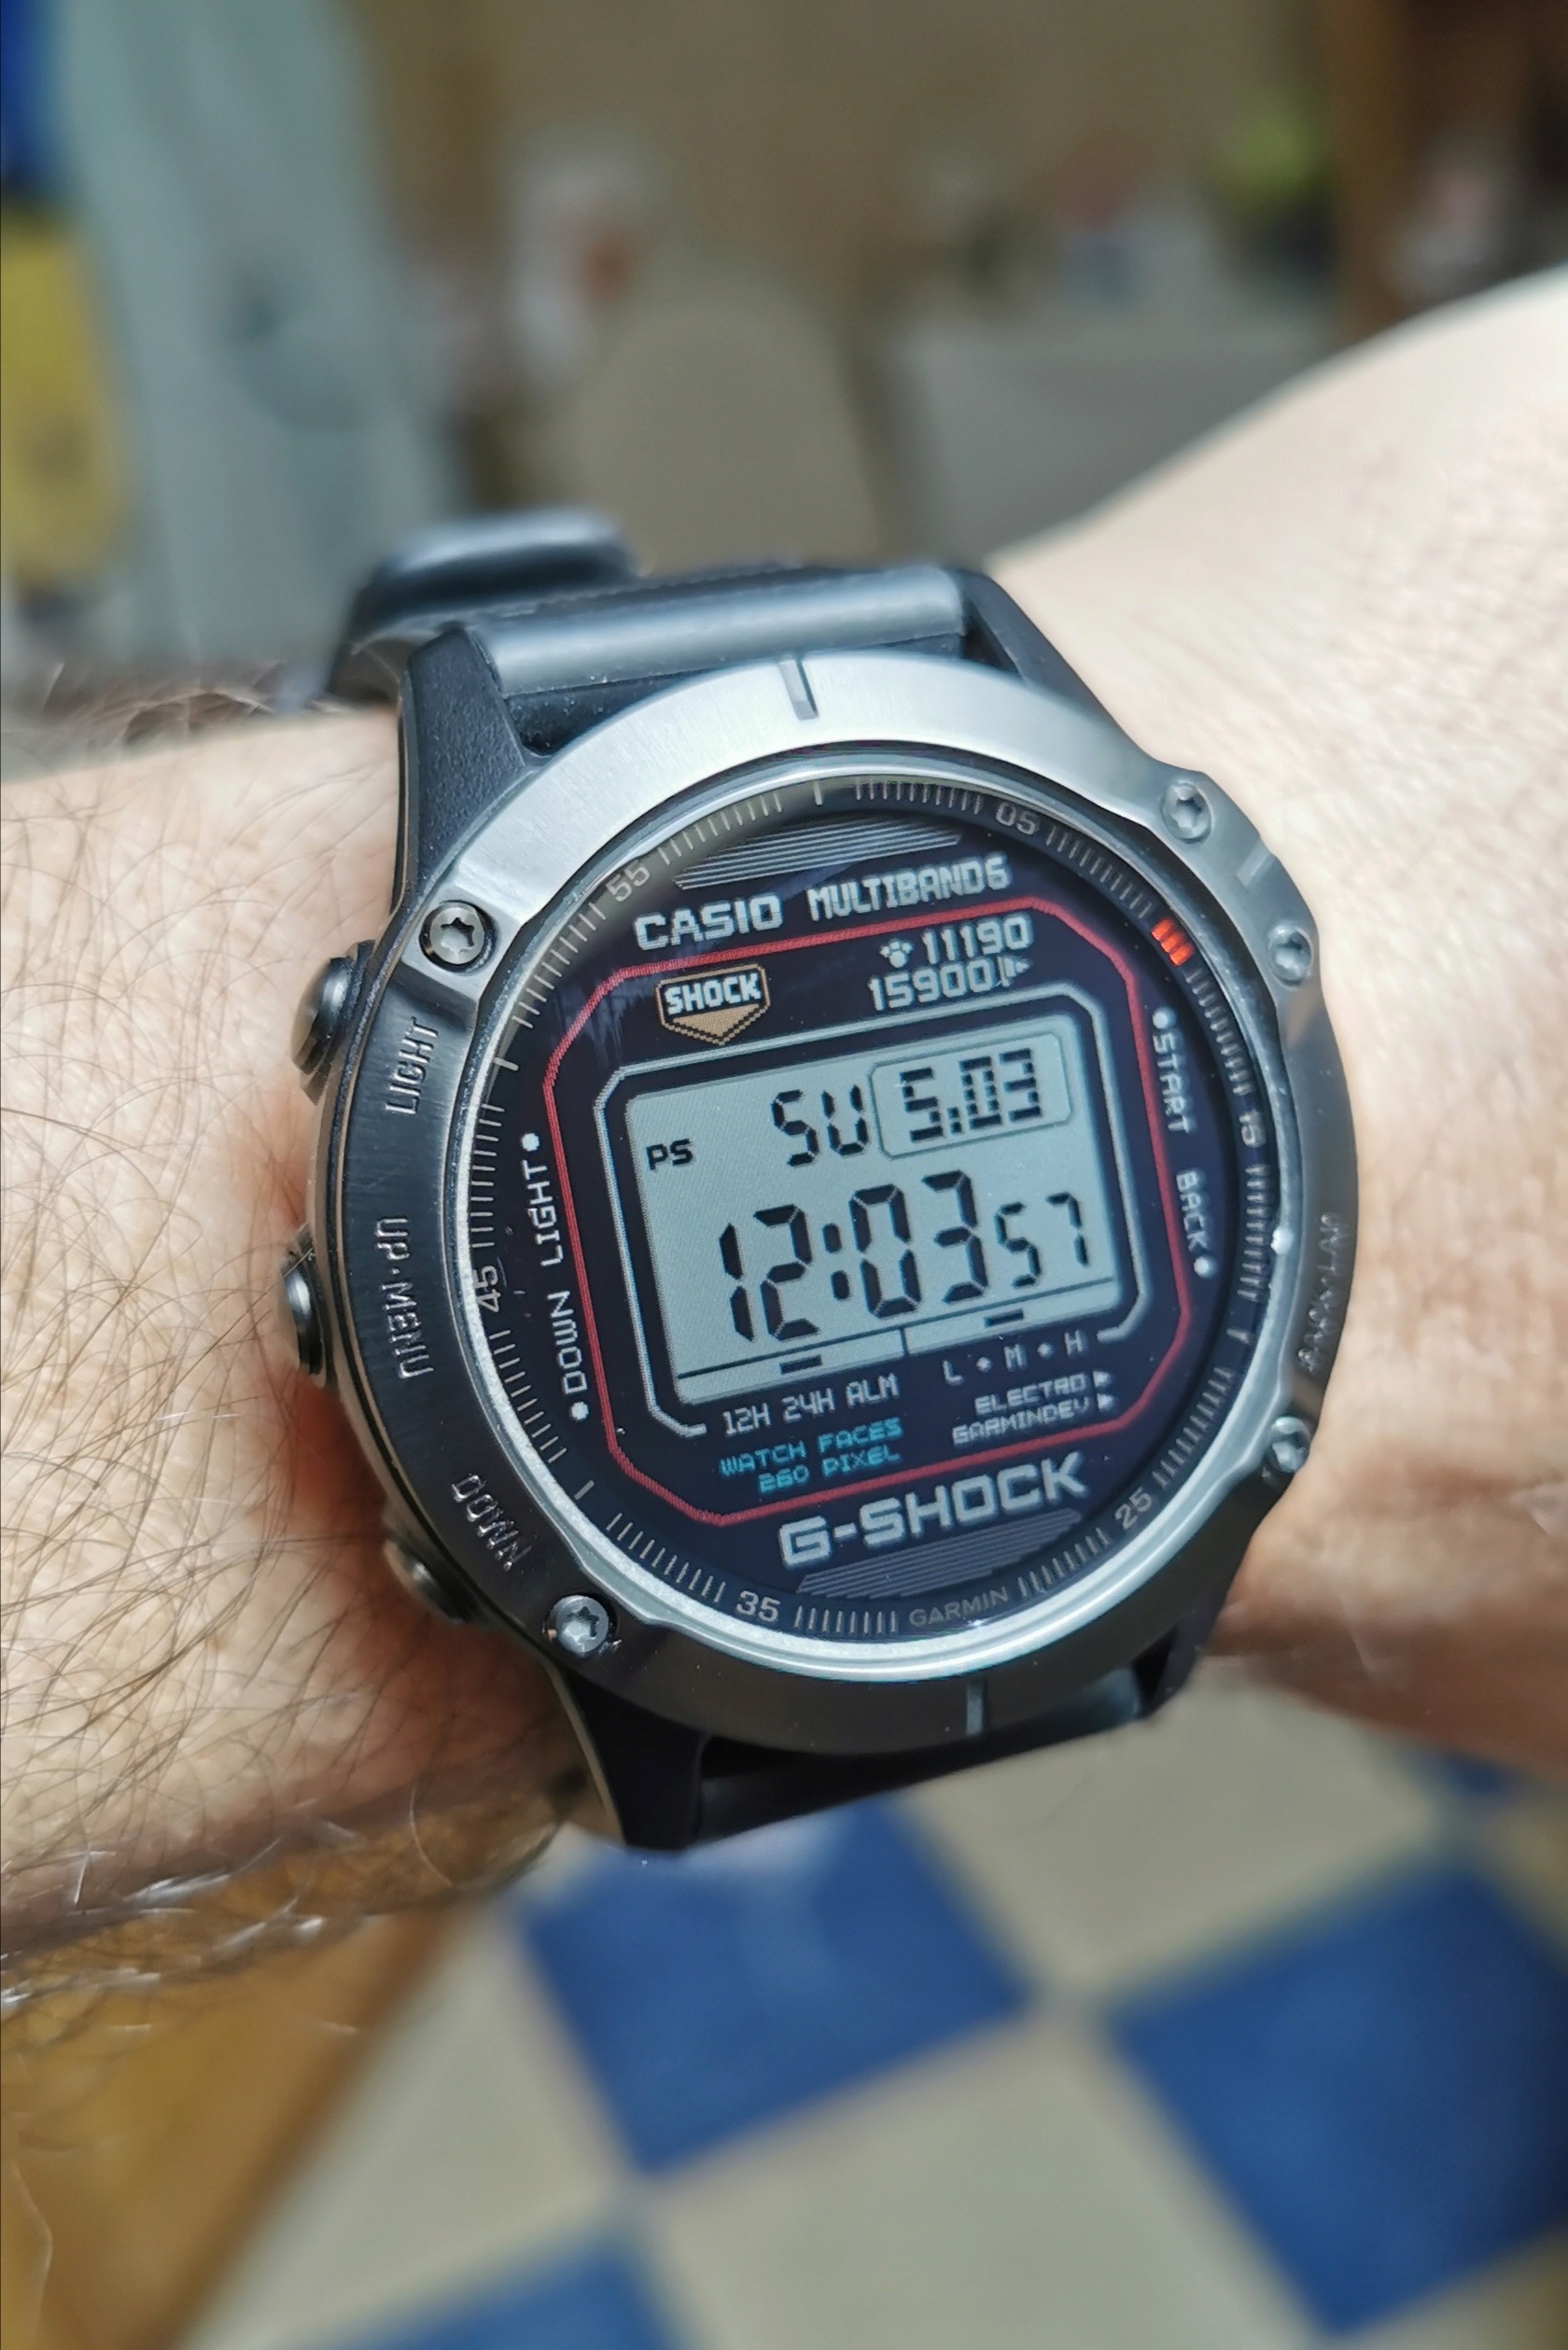 Quelques fois posez vous votre montre pour une montre type GPS ? - Page 2 Img_2421